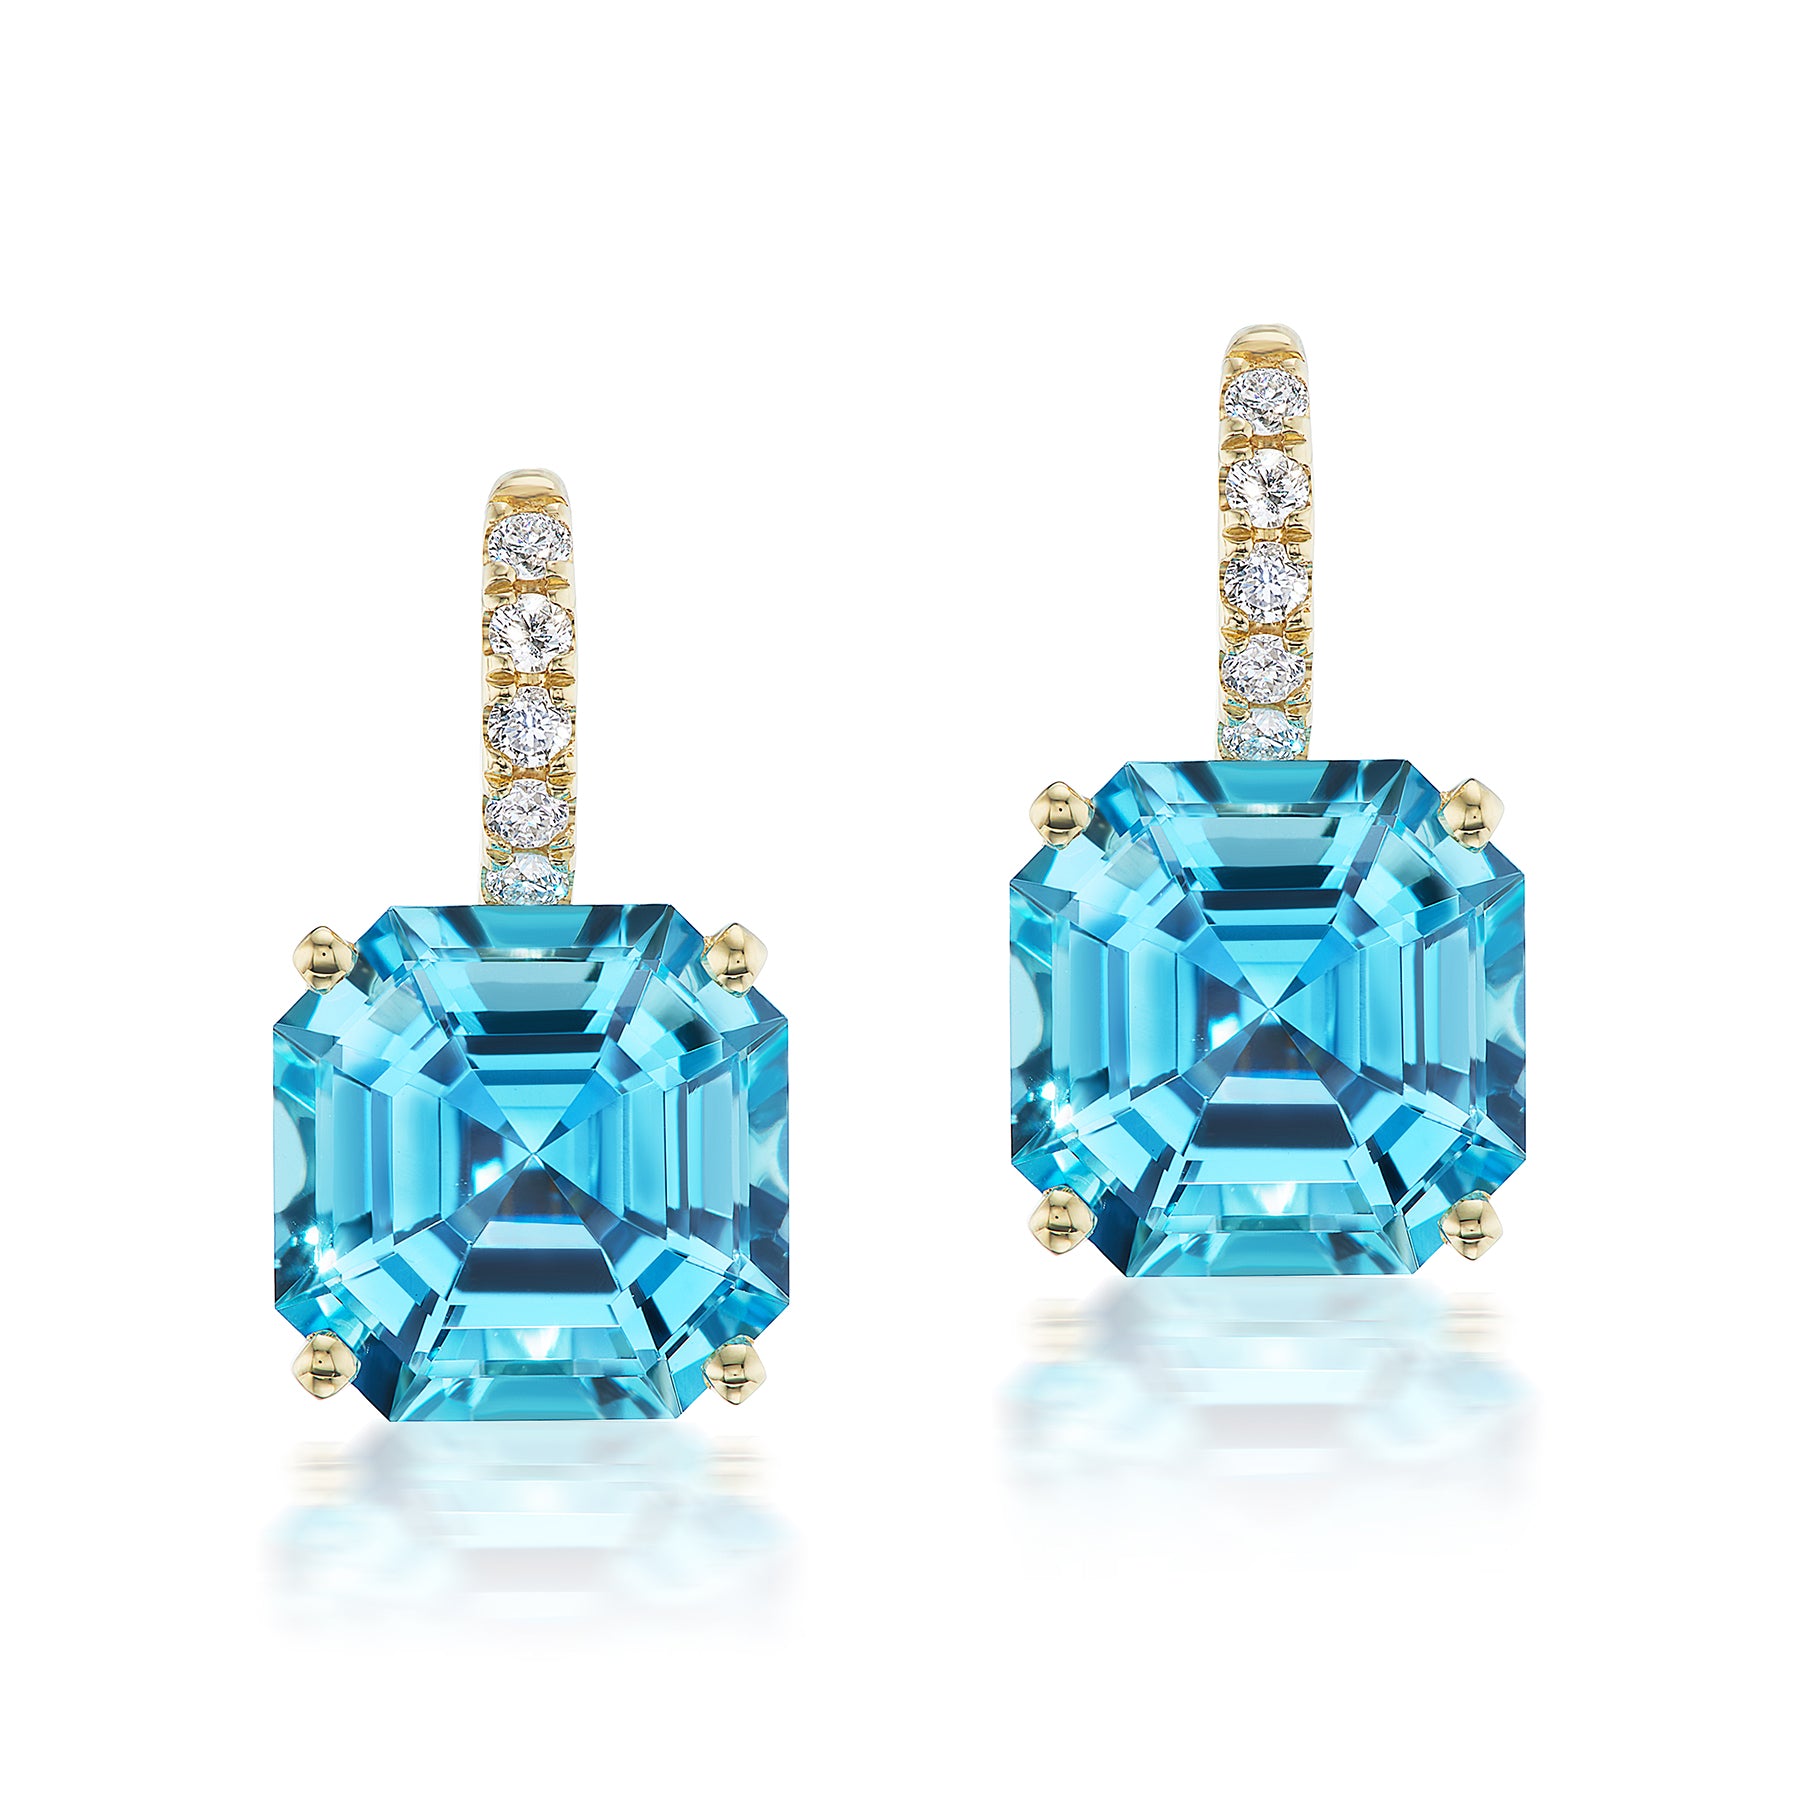 Ear Wire Diamond and Gemstone Drop Earrings